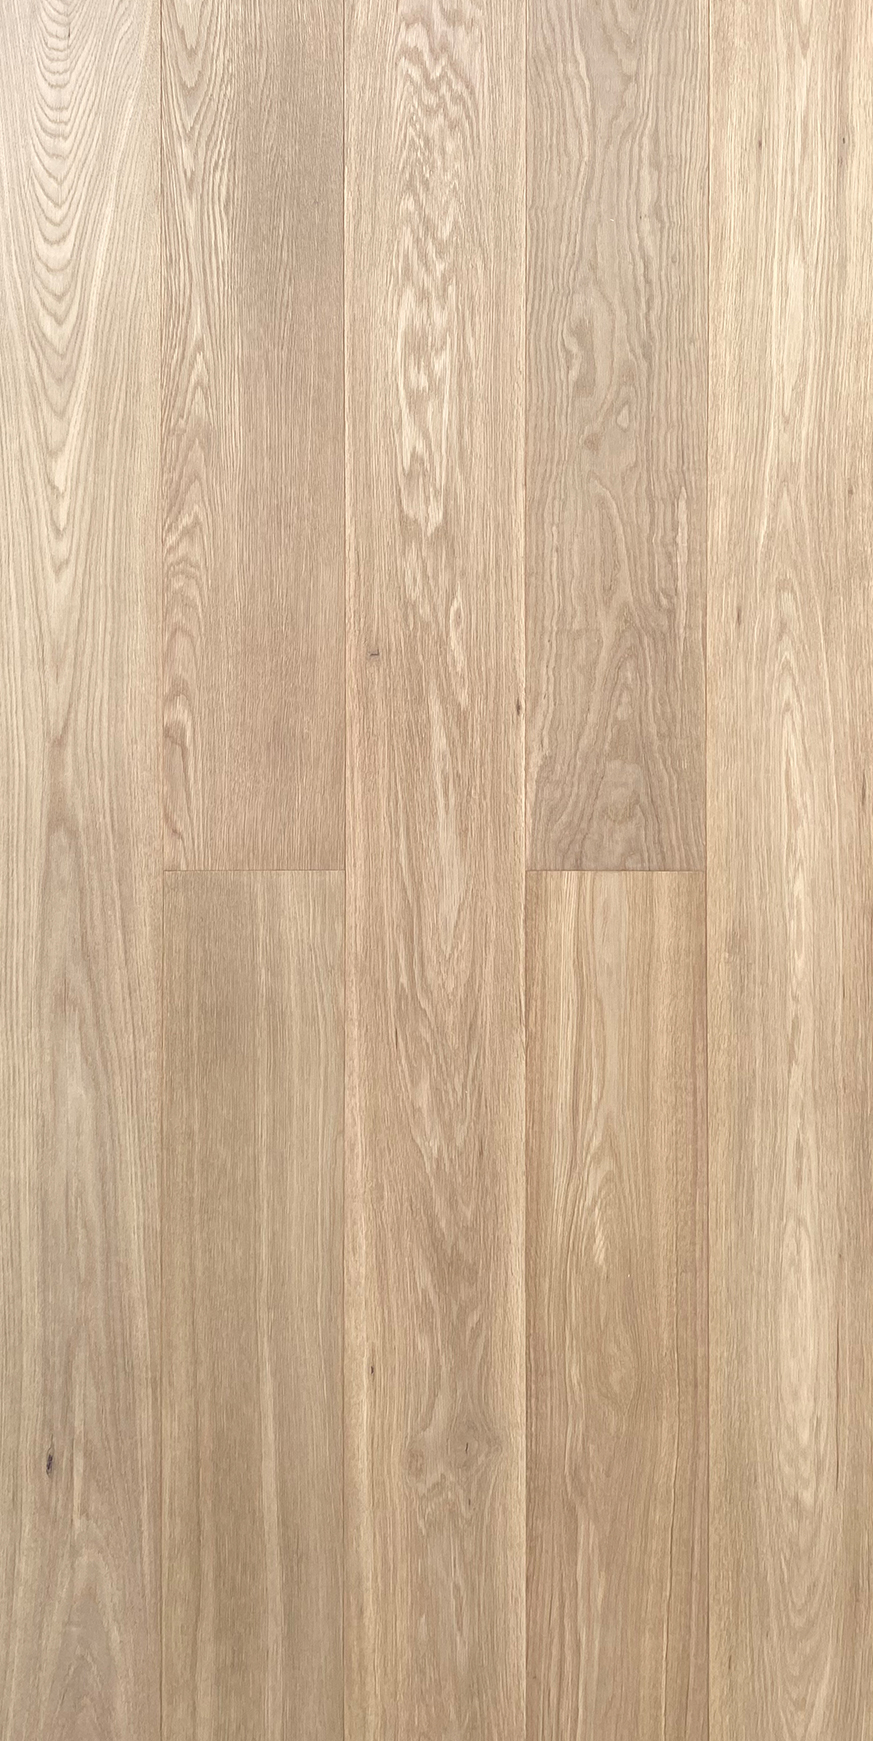 ABC Plank Oak Flooring